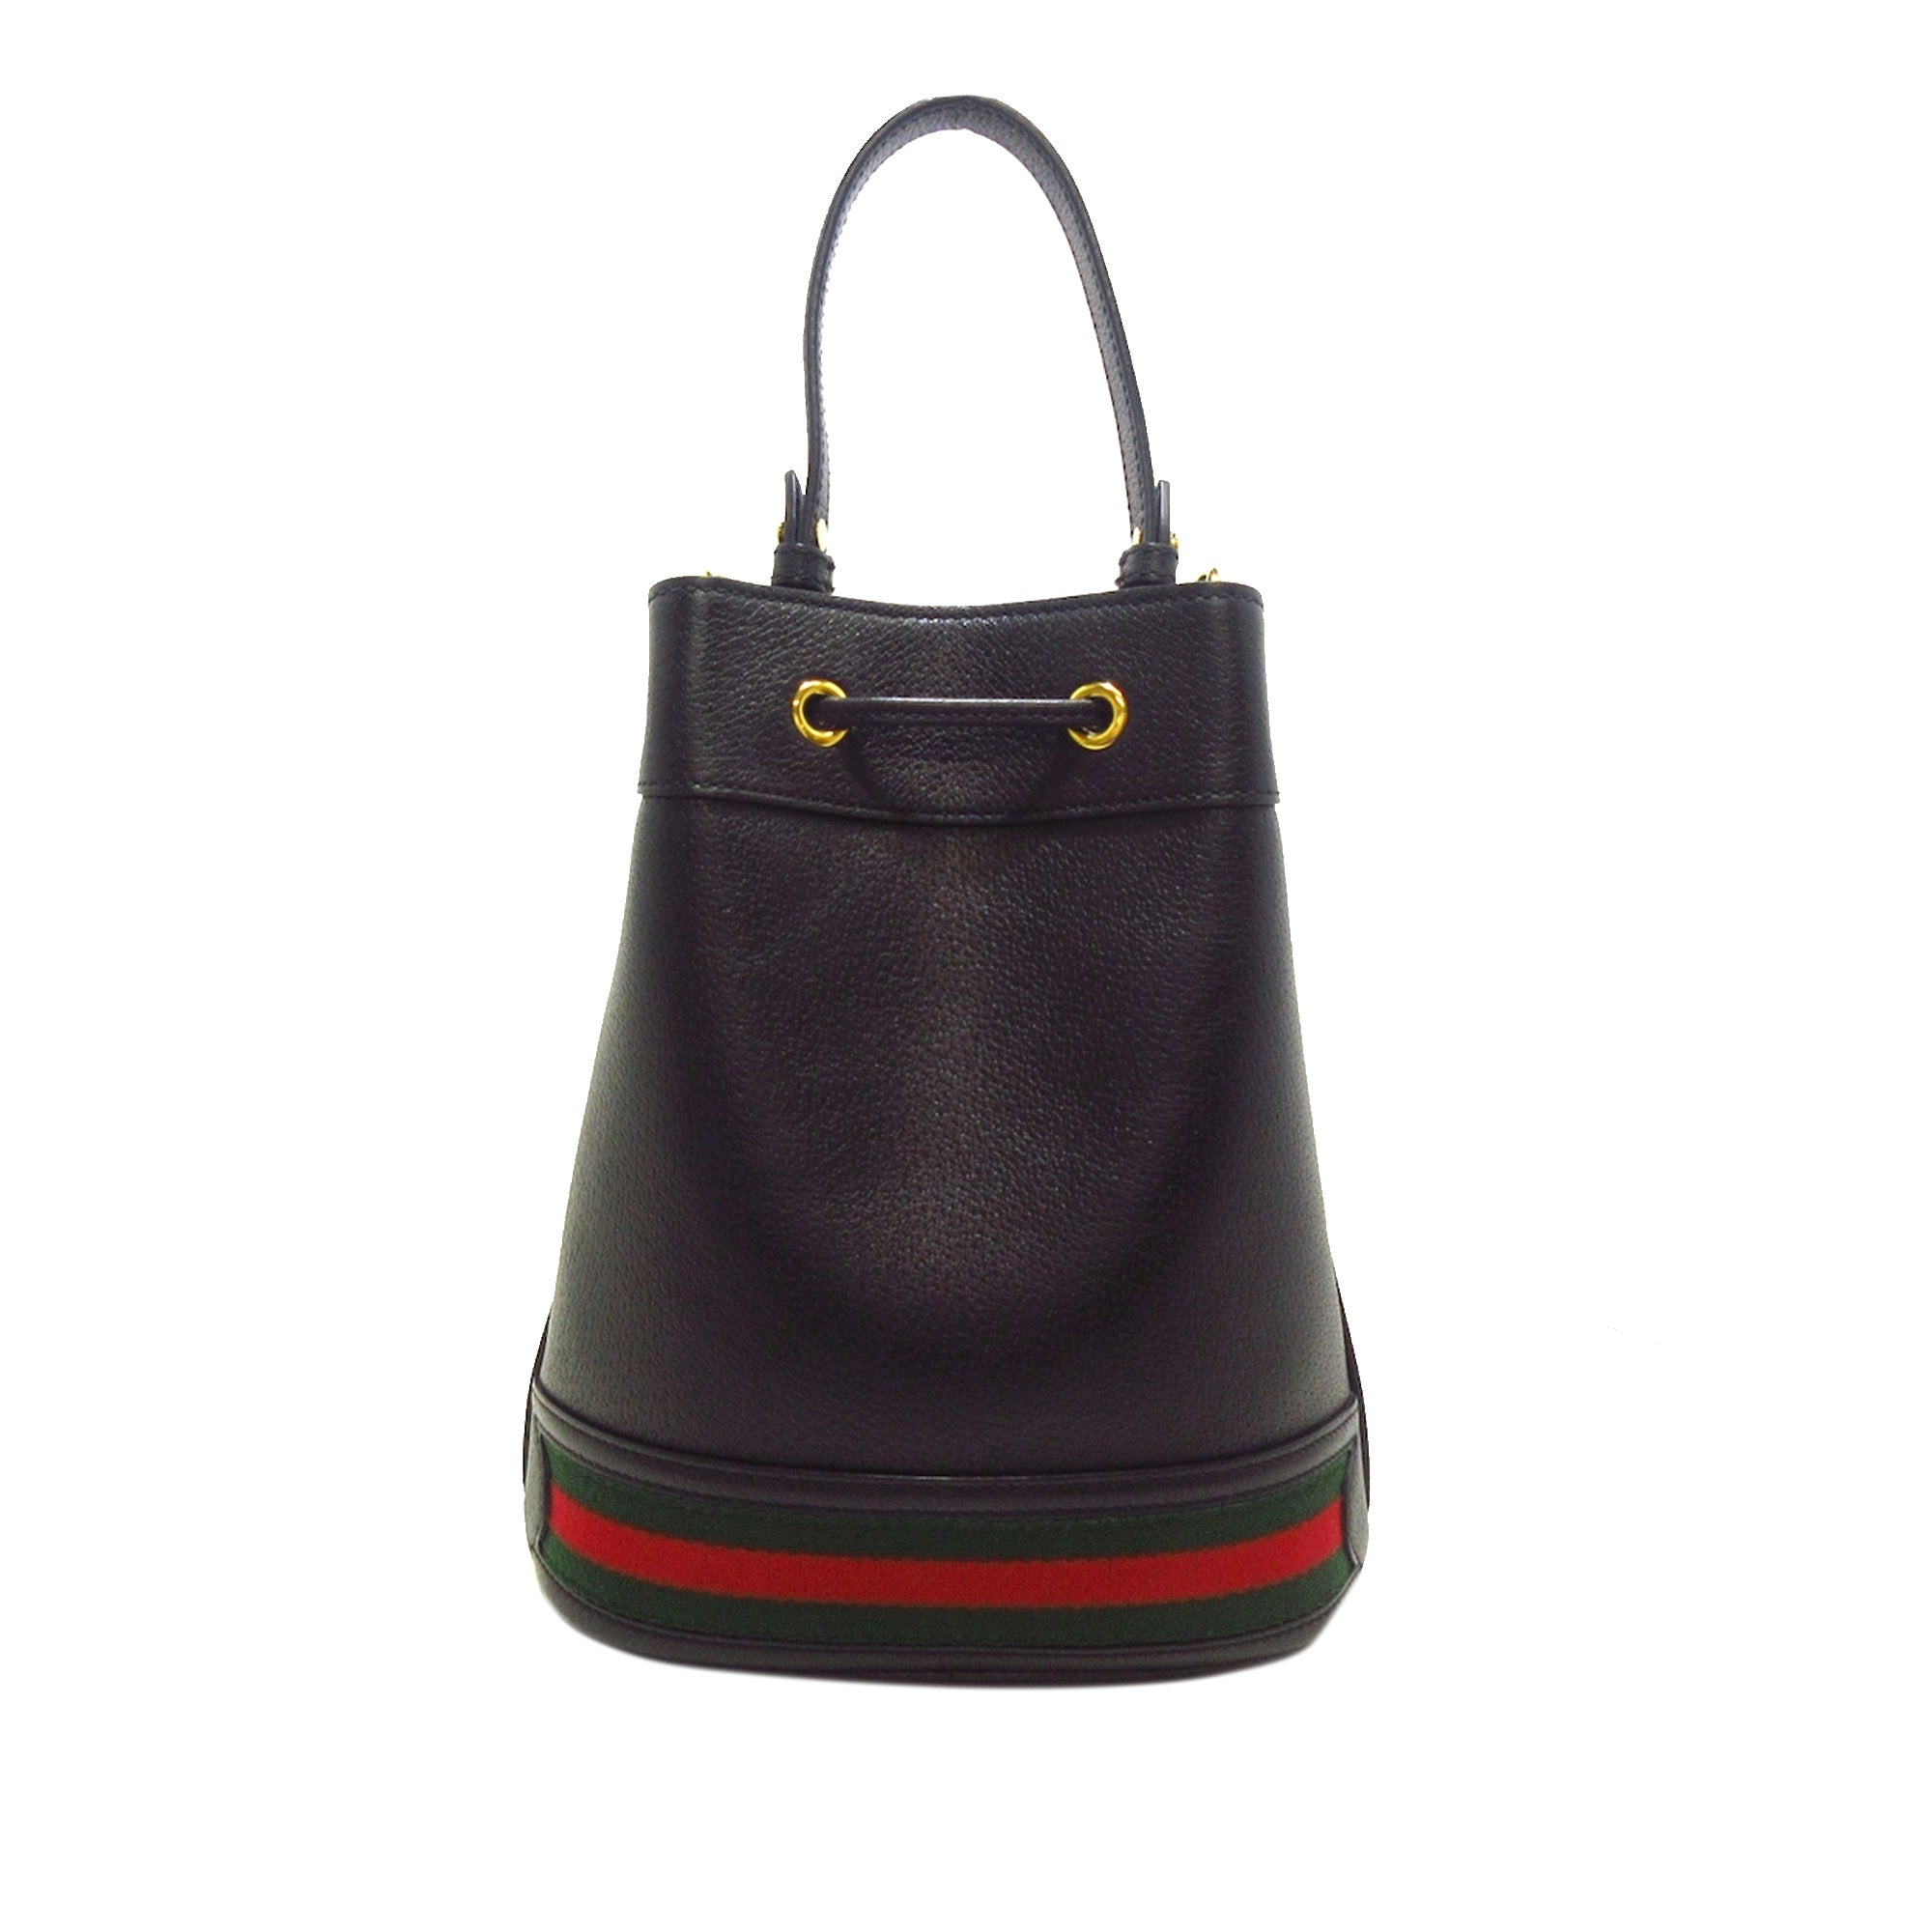 Louis Vuitton - Authenticated Concorde Handbag - Leather Black Plain for Women, Good Condition